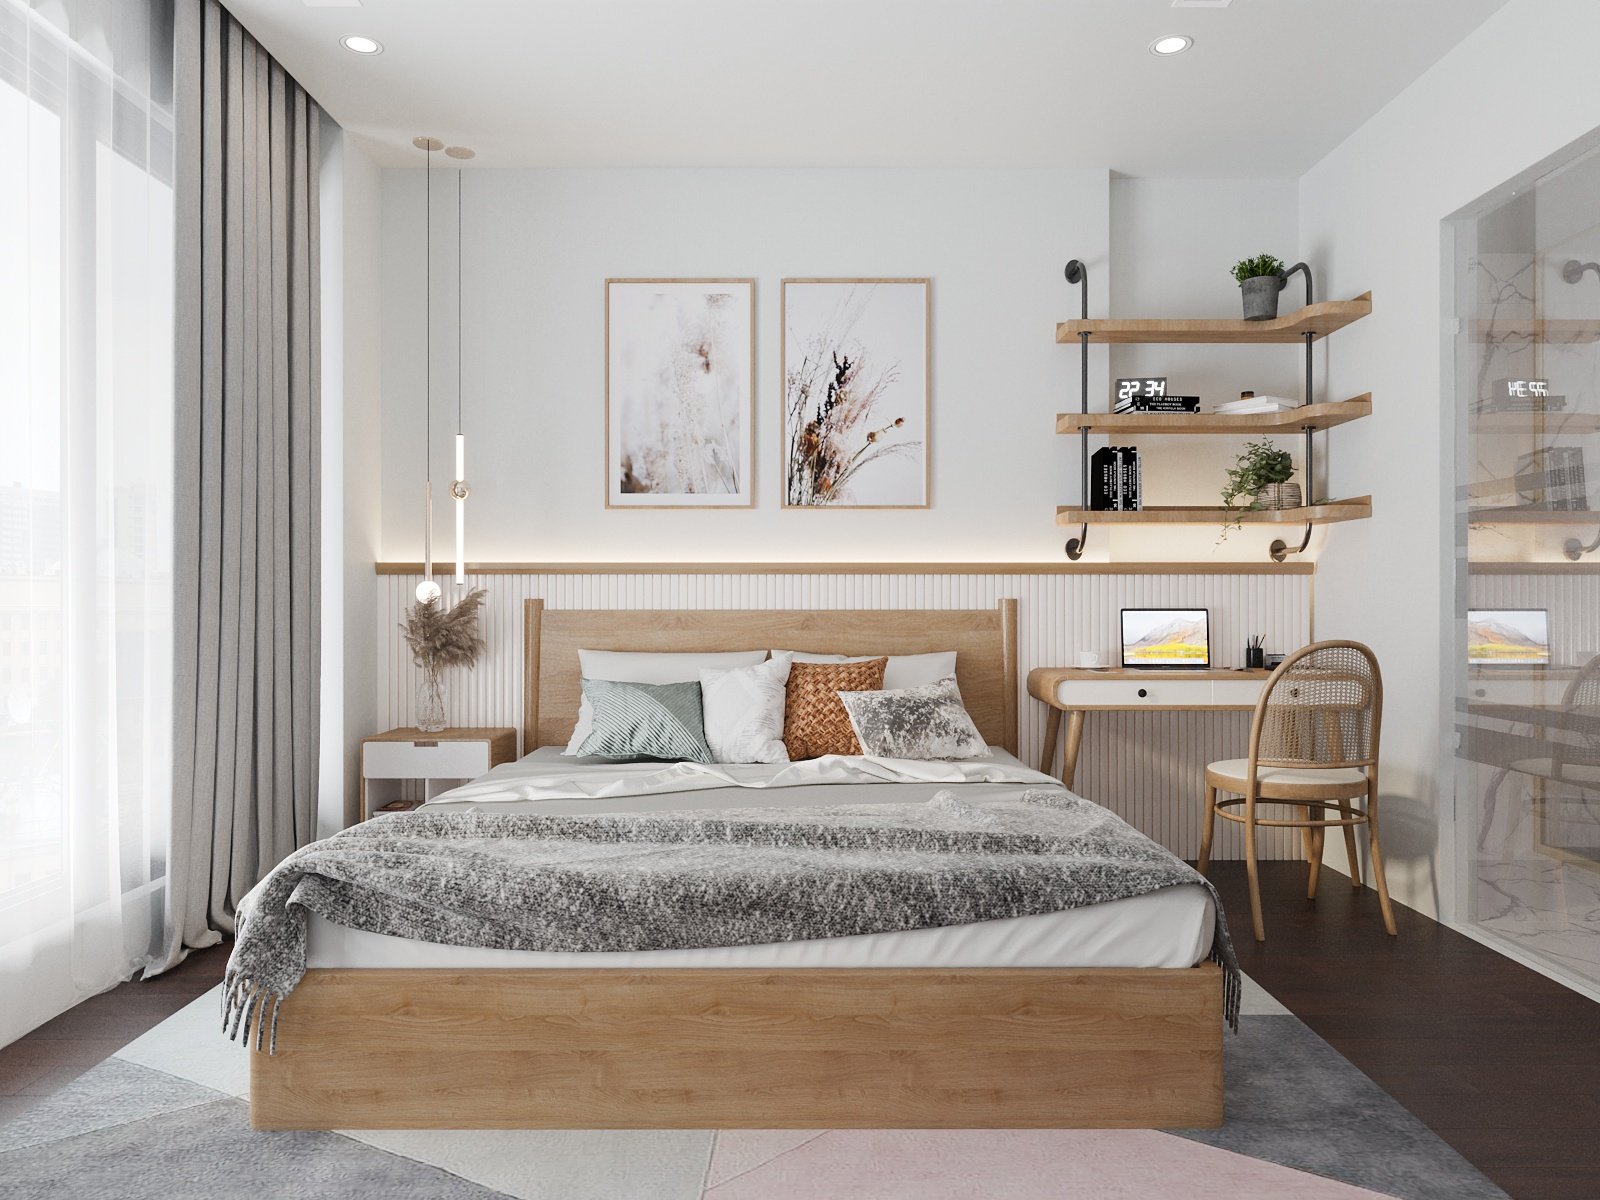 Phòng ngủ thứ hai trong căn Duplex được thiết kế theo phong cách hiện đại nhẹ nhàng, sử dụng tông màu trắng và nội thất gỗ chủ đạo.